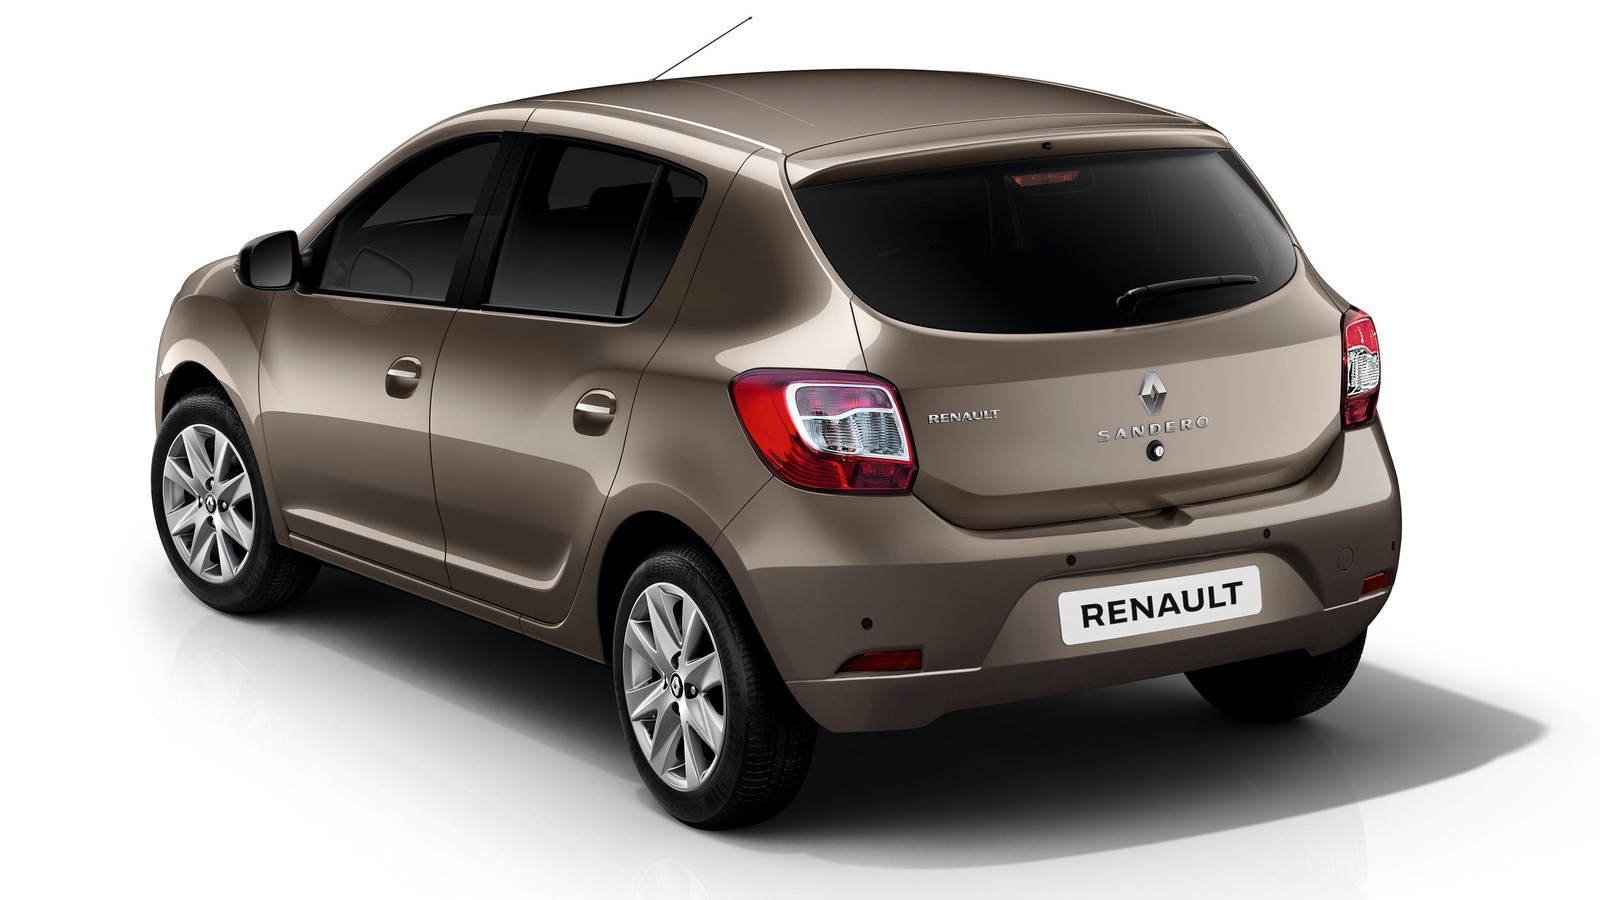 16 швов брака: Renault отзывает в РФ плохо сваренные Logan и Sandero